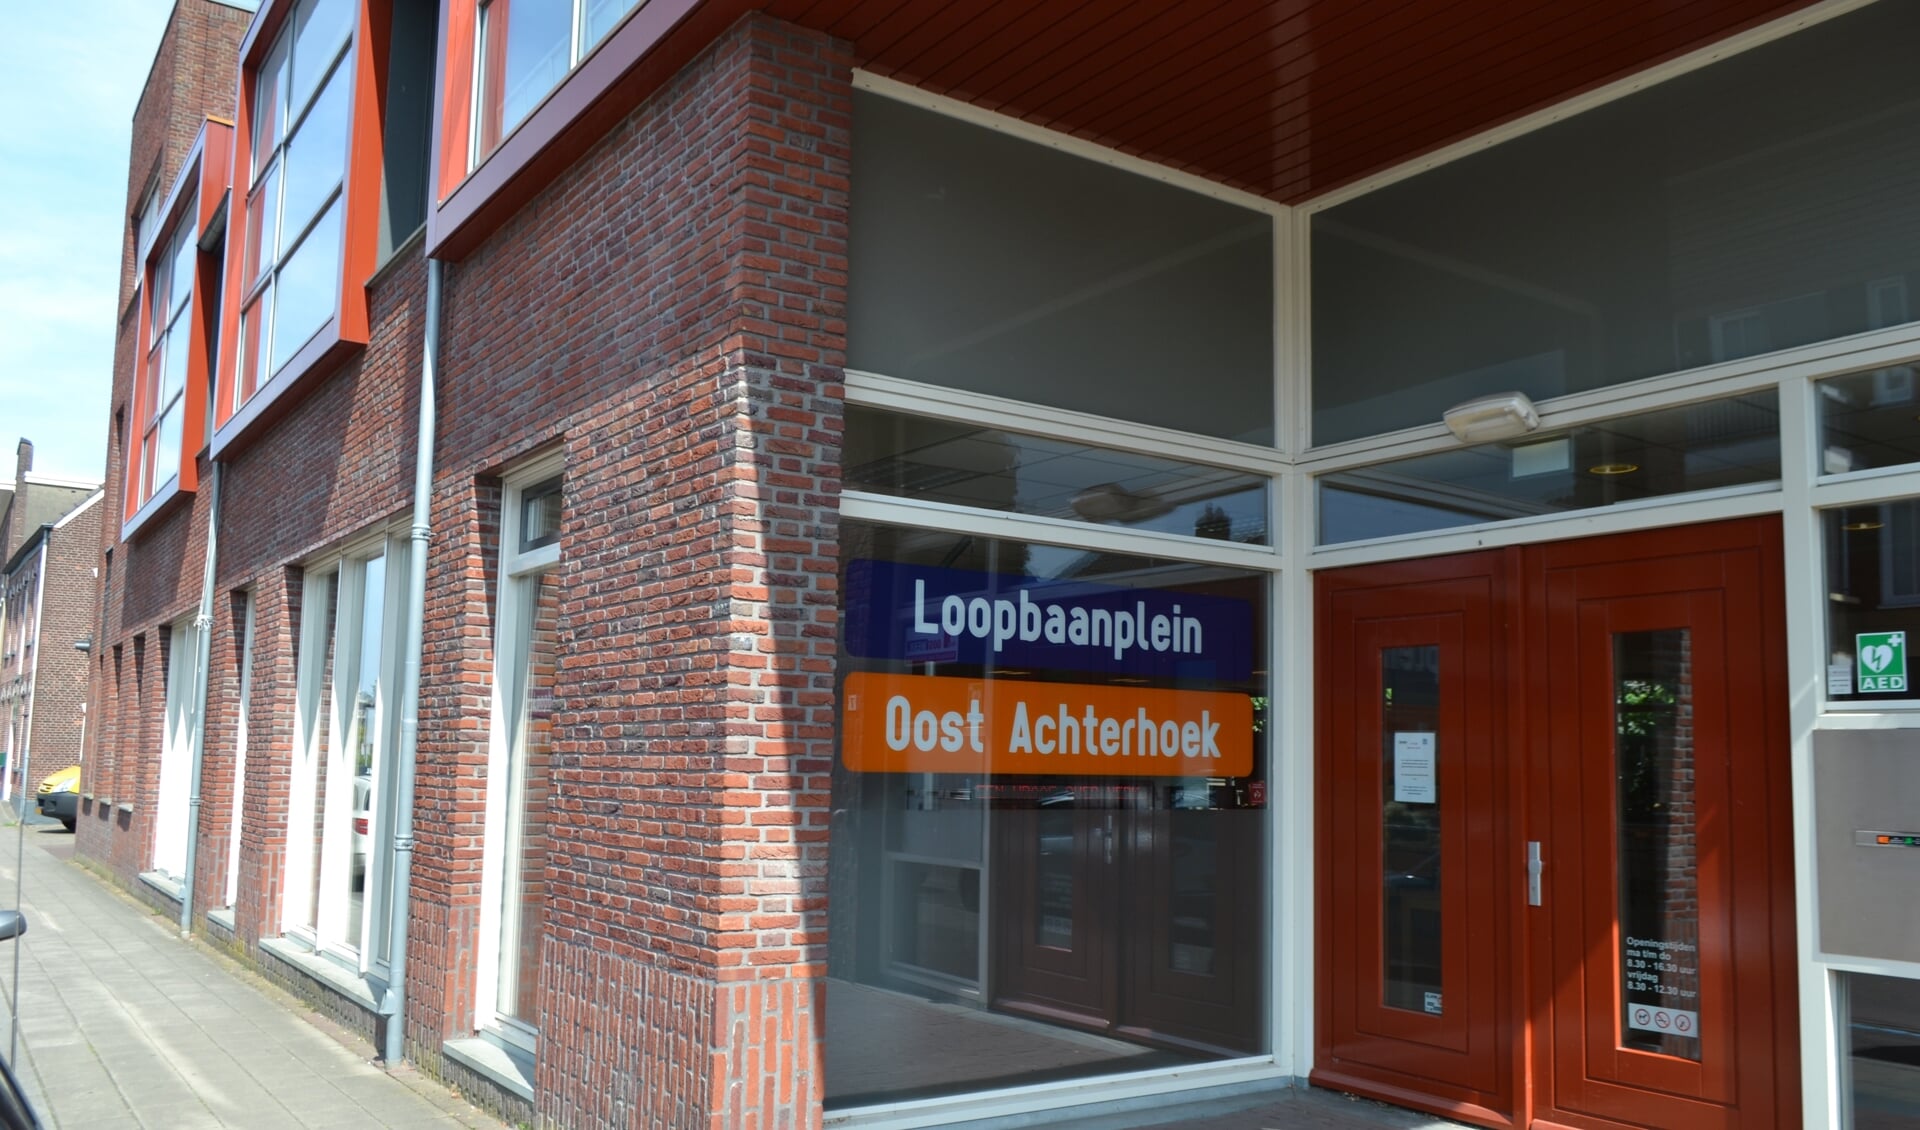 Cliënten van de SDOA bezoeken het Loopbaanplein in Winterswijk om geholpen te worden met een bijstand en re-integratie op de arbeidsmarkt. Foto: Leander Grooten